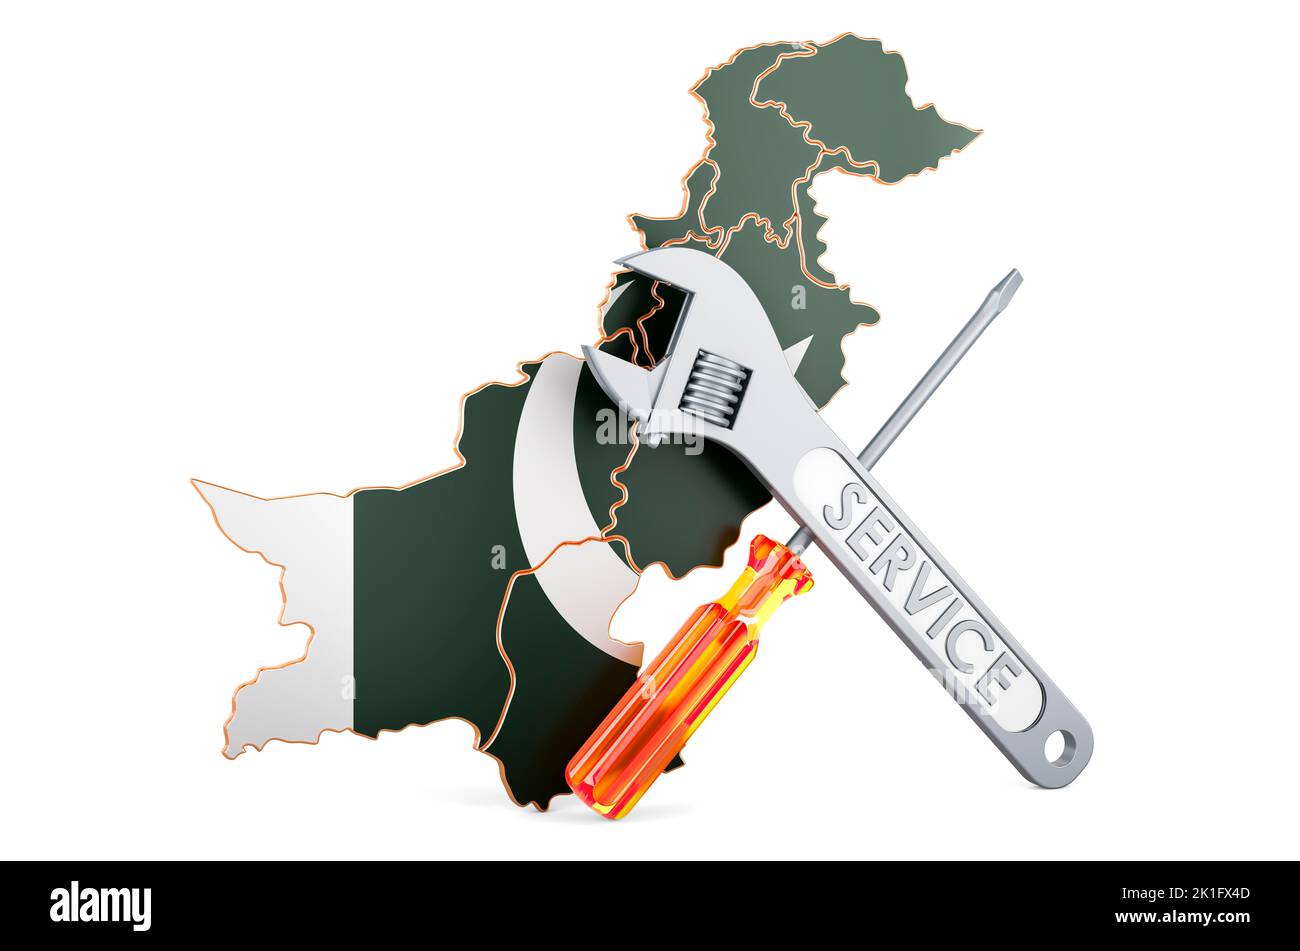 Mapa paquistaní con destornillador y llave, 3D renderizado aislado sobre fondo blanco Foto de stock